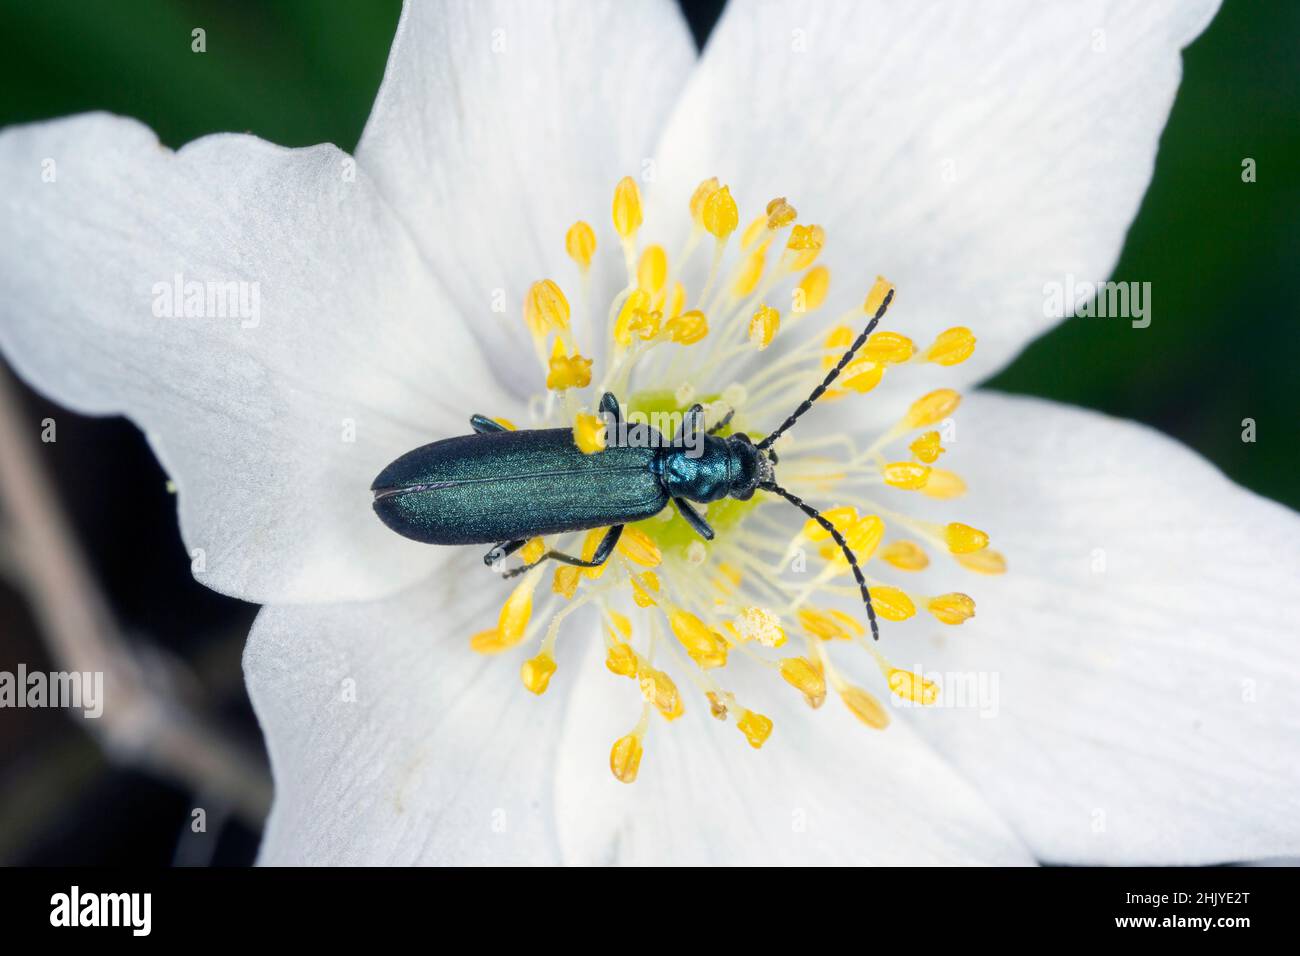 Escarabajo de la familia Oedeméridae conocido comúnmente como escarabajo blíster falso, género Ischnomera. Foto de stock